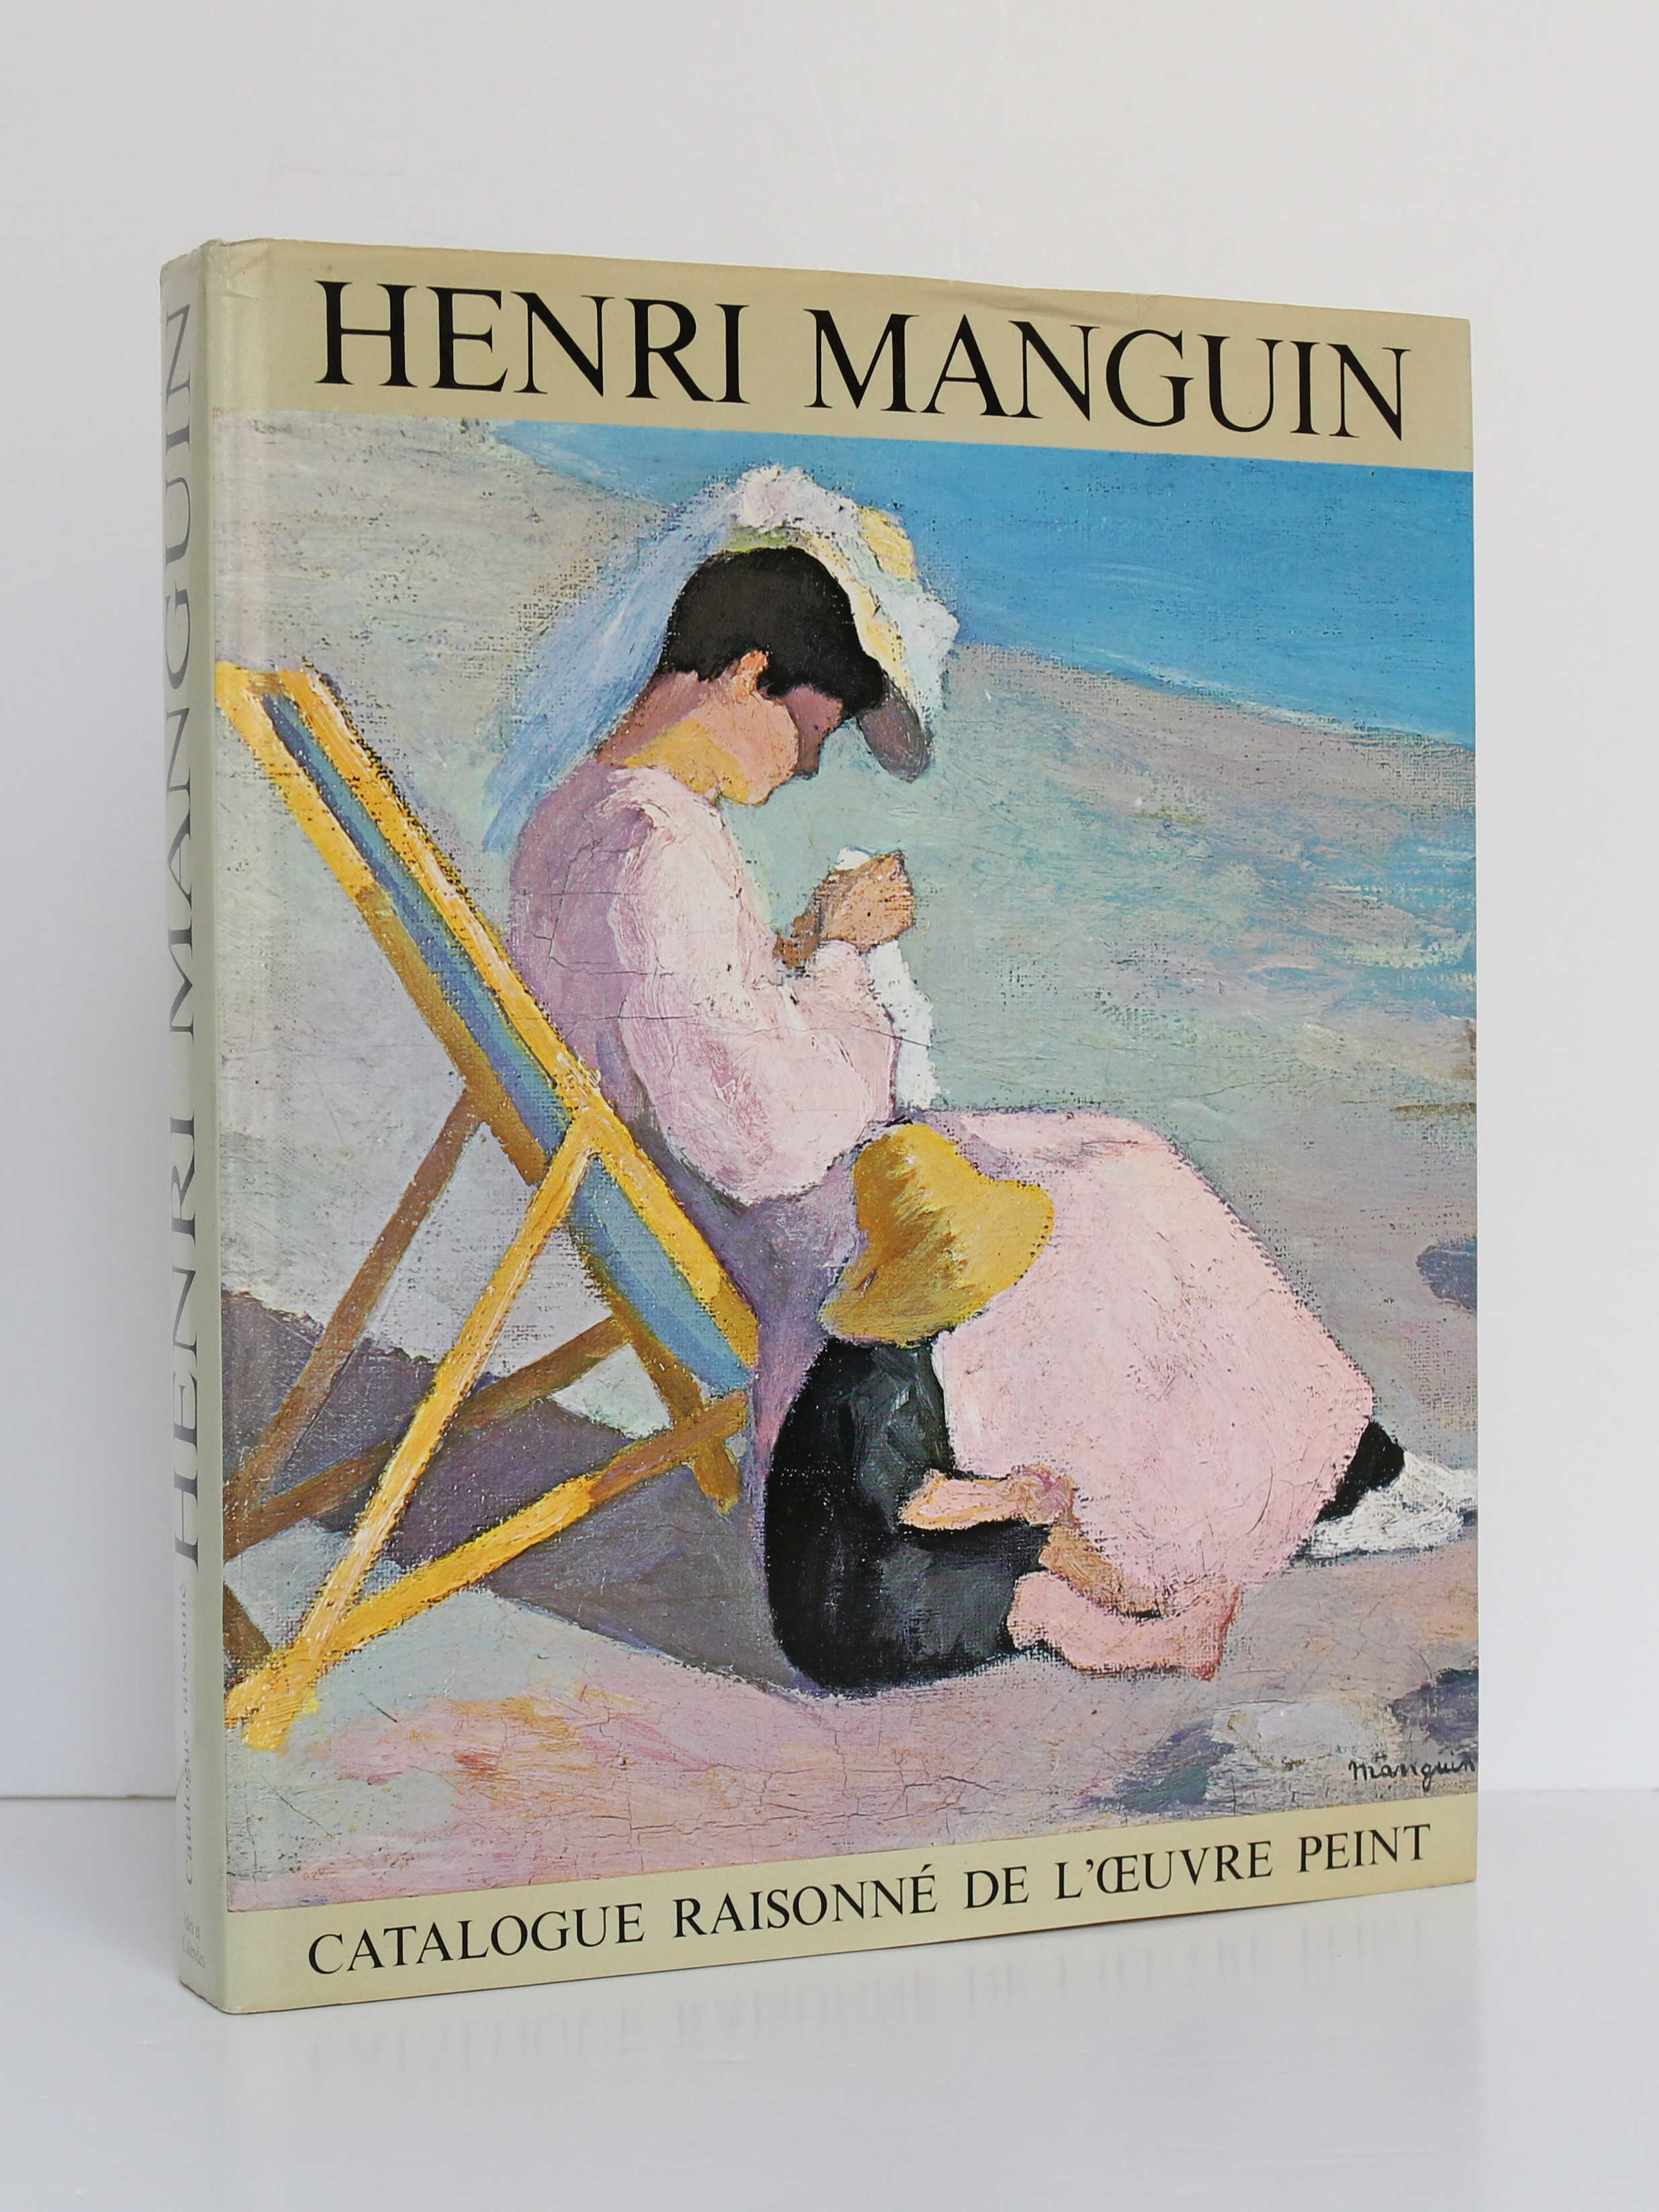 Henri Manguin, catalogue raisonné de l'œuvre peint. Ides et Calendes, 1980. Couverture.